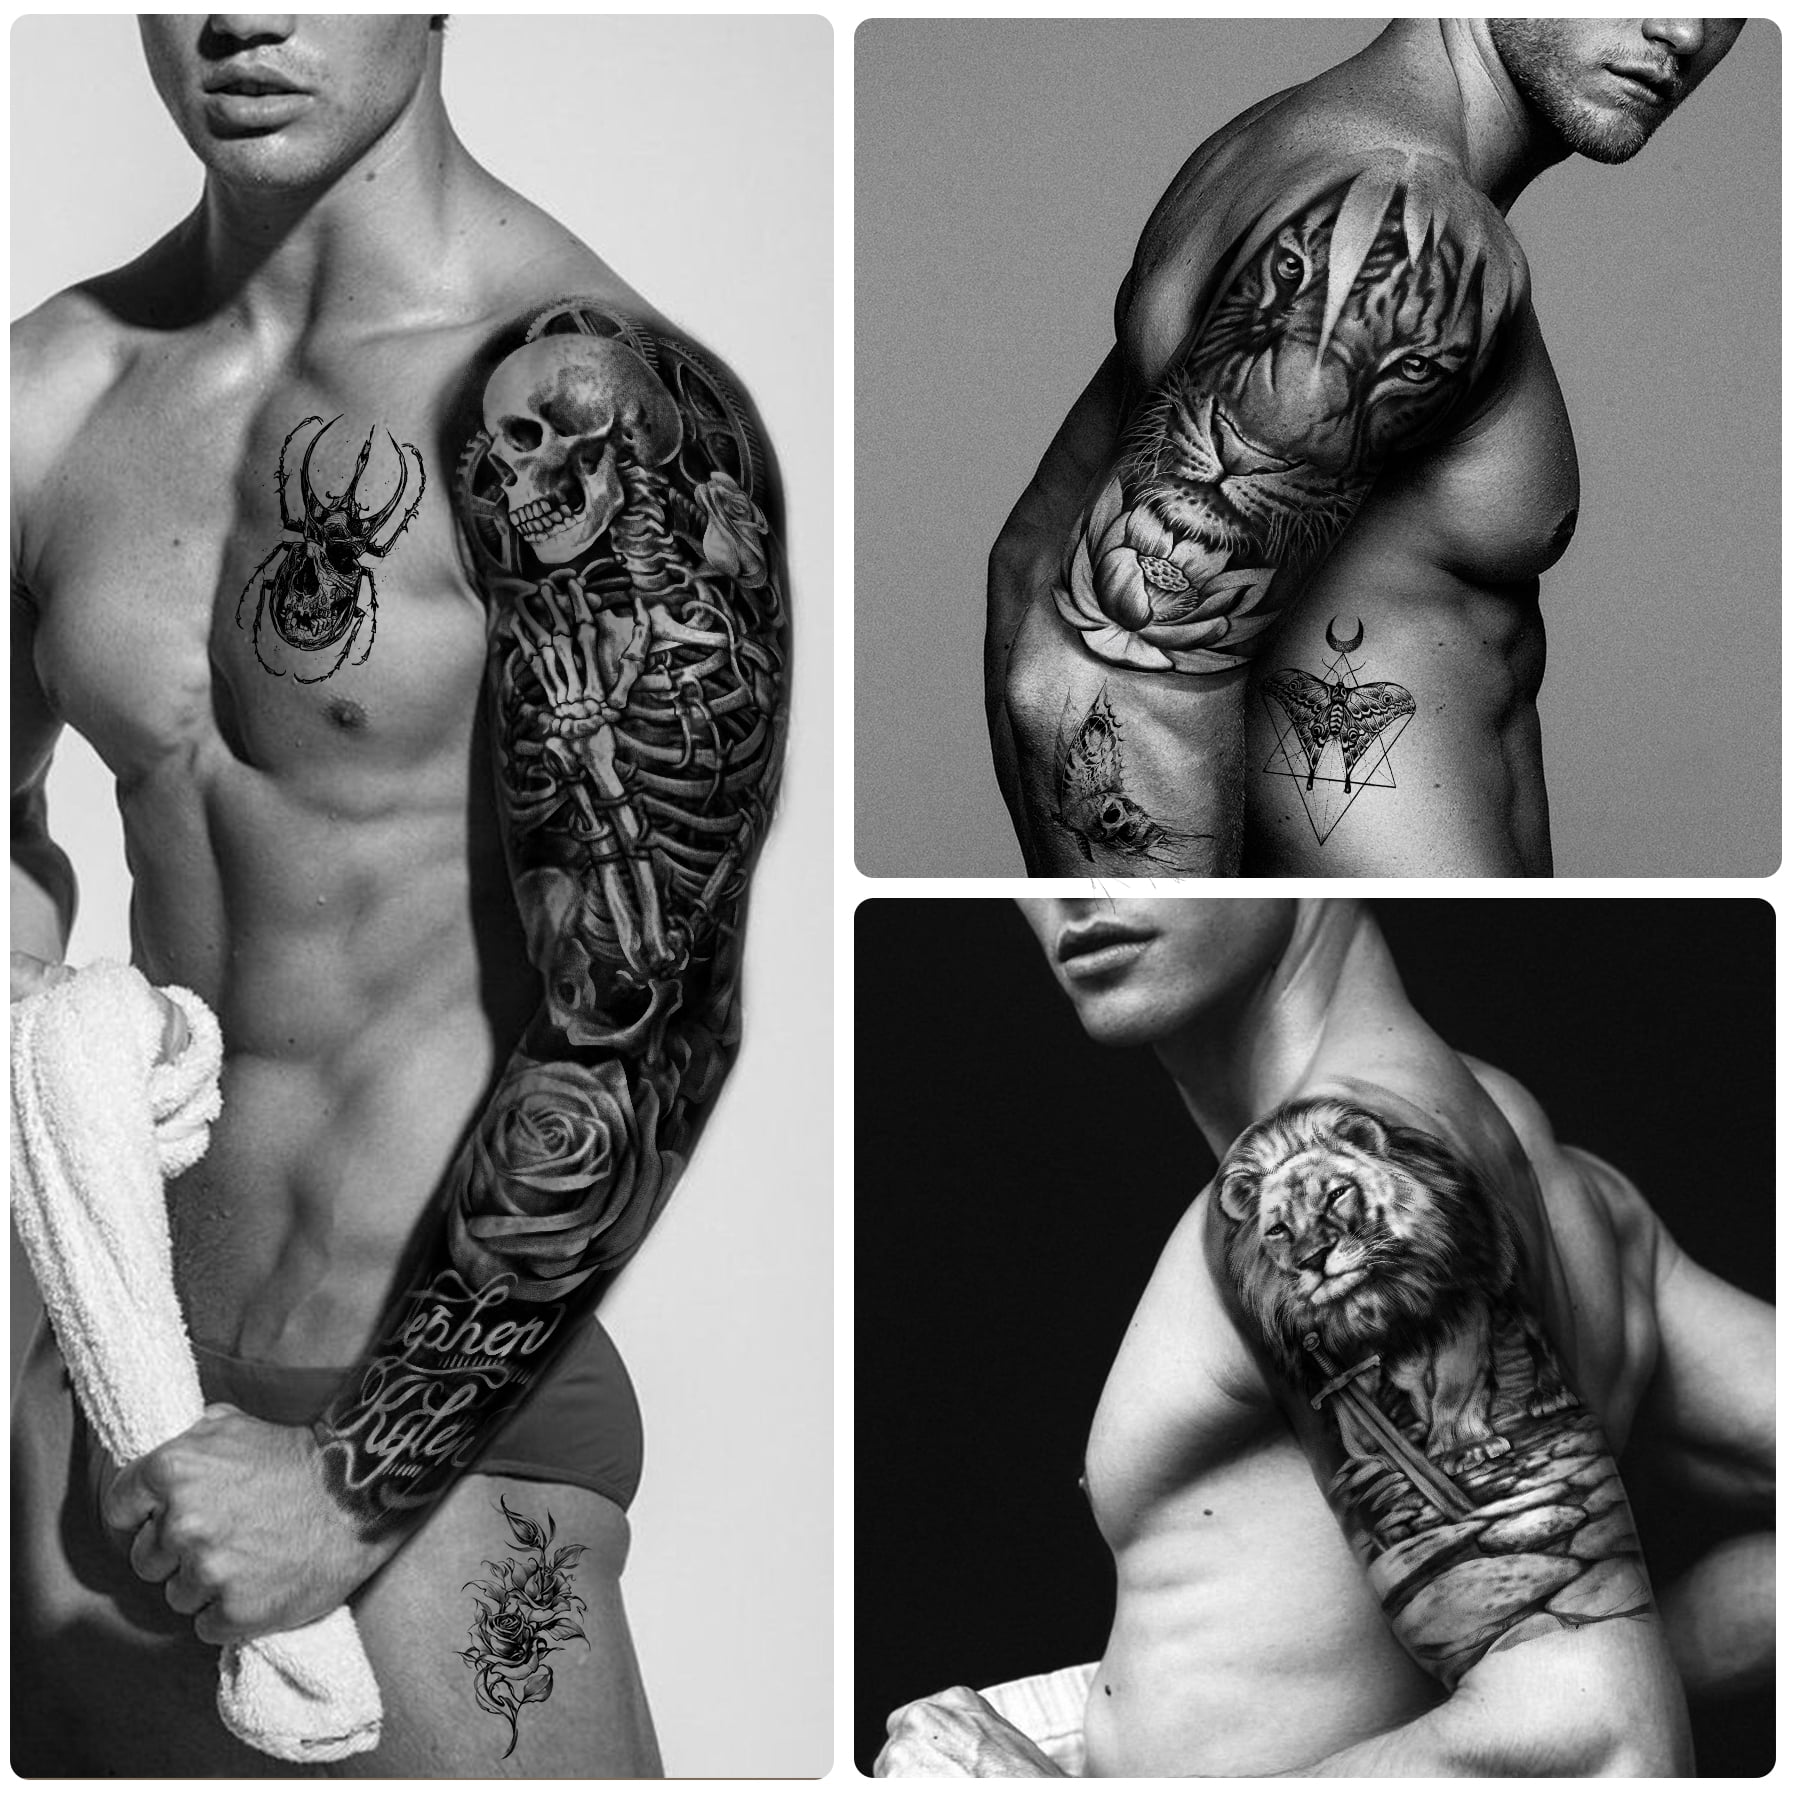 Shoulder Tattoos For Men Full sleeve tribal tattoo ideas for men - YouTube